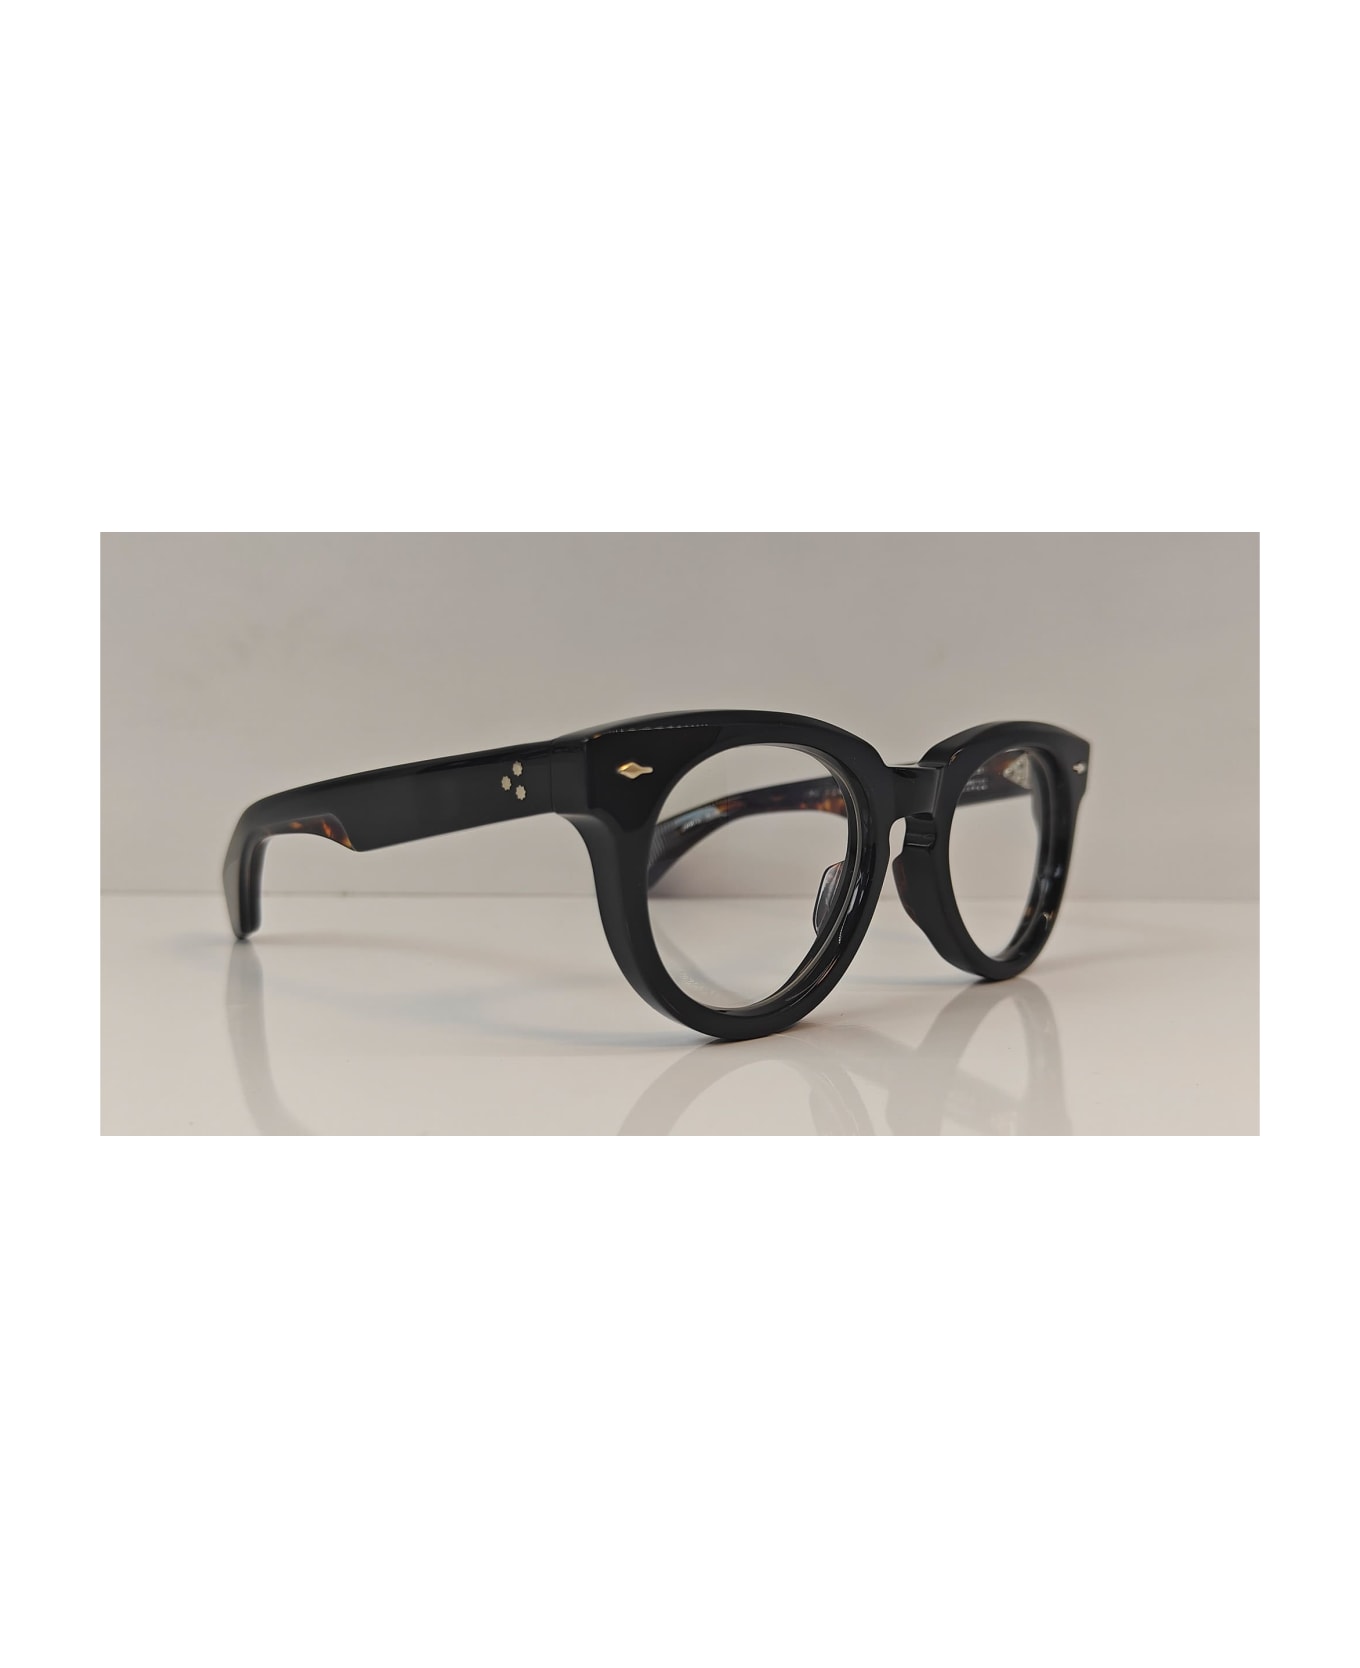 Jacques Marie Mage Fontainebleau 2 - Noir 7 Rx Glasses - black/silver